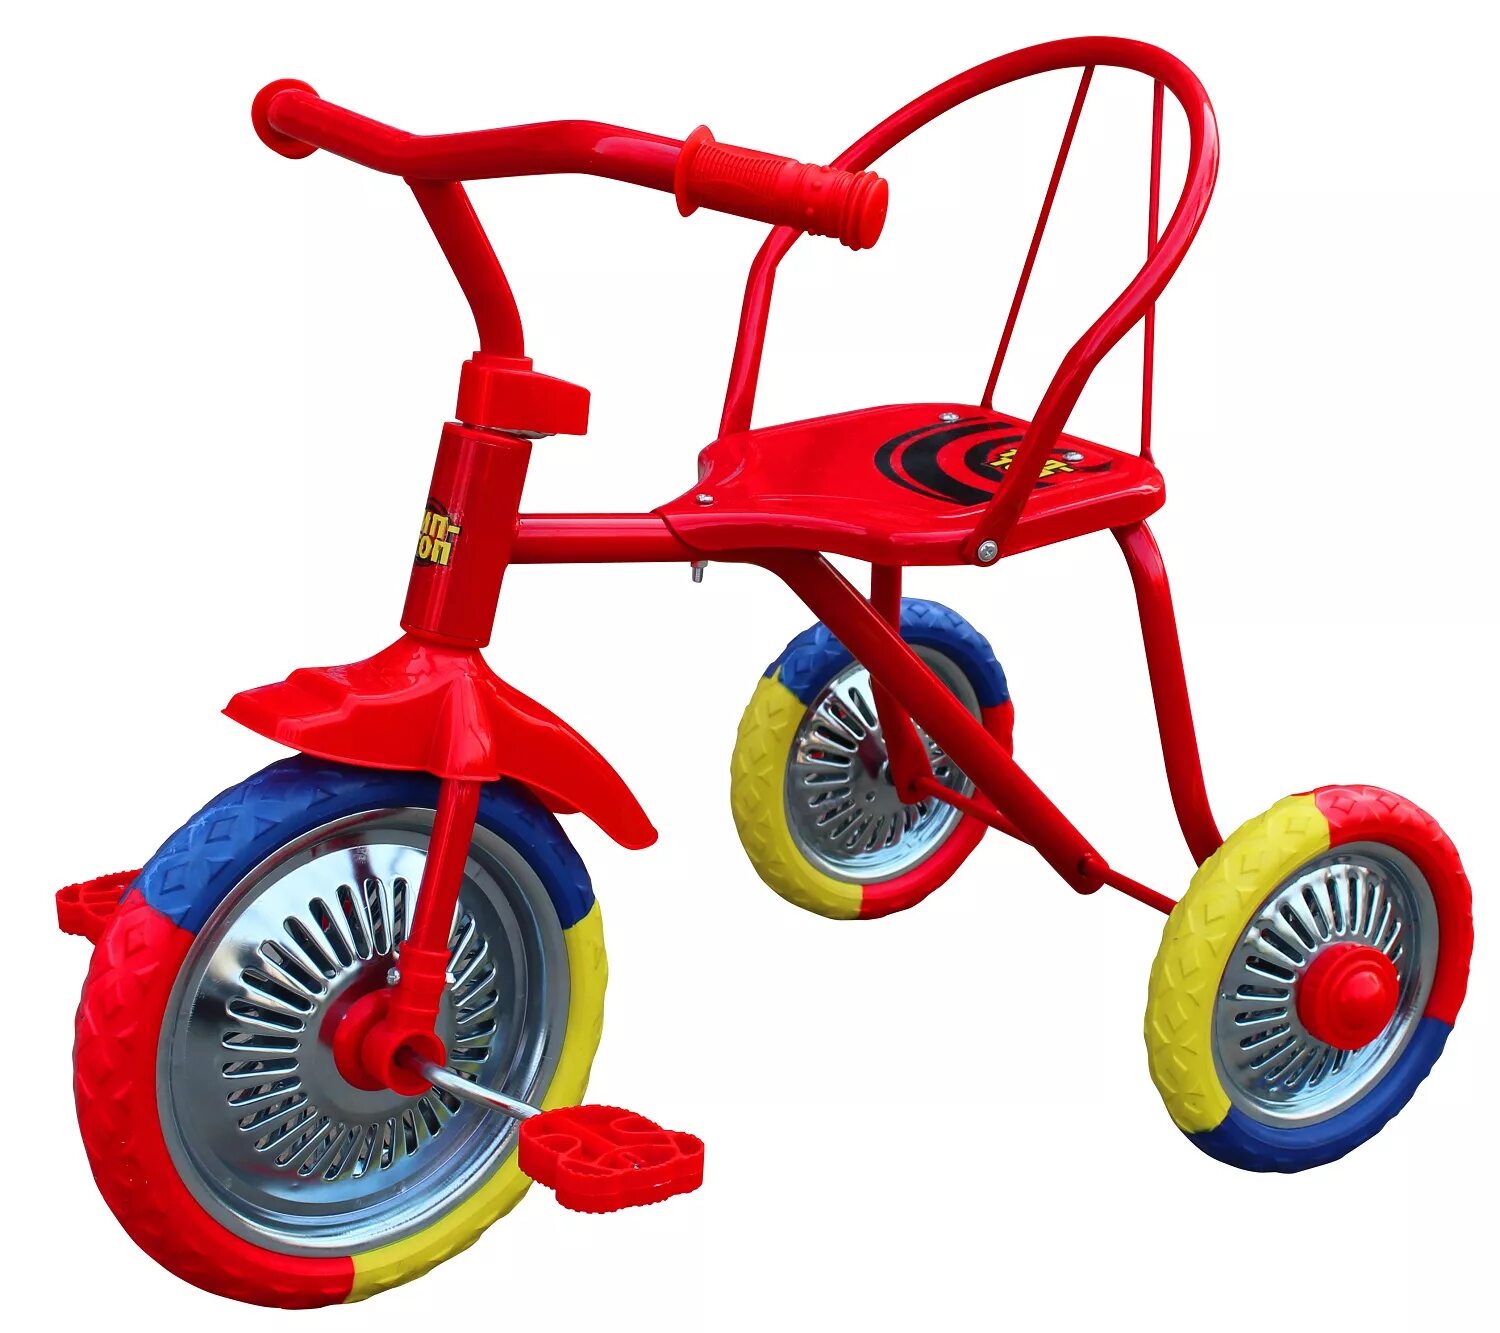 Детского велосипеда колесо 8. Трехколесный велосипед BLACKAQUA Тип-топ 313. Велосипед 3х колесный Блэк Аква. Велосипед Тип топ 312. Велосипед трёхколёсный Блэк Аква 518.